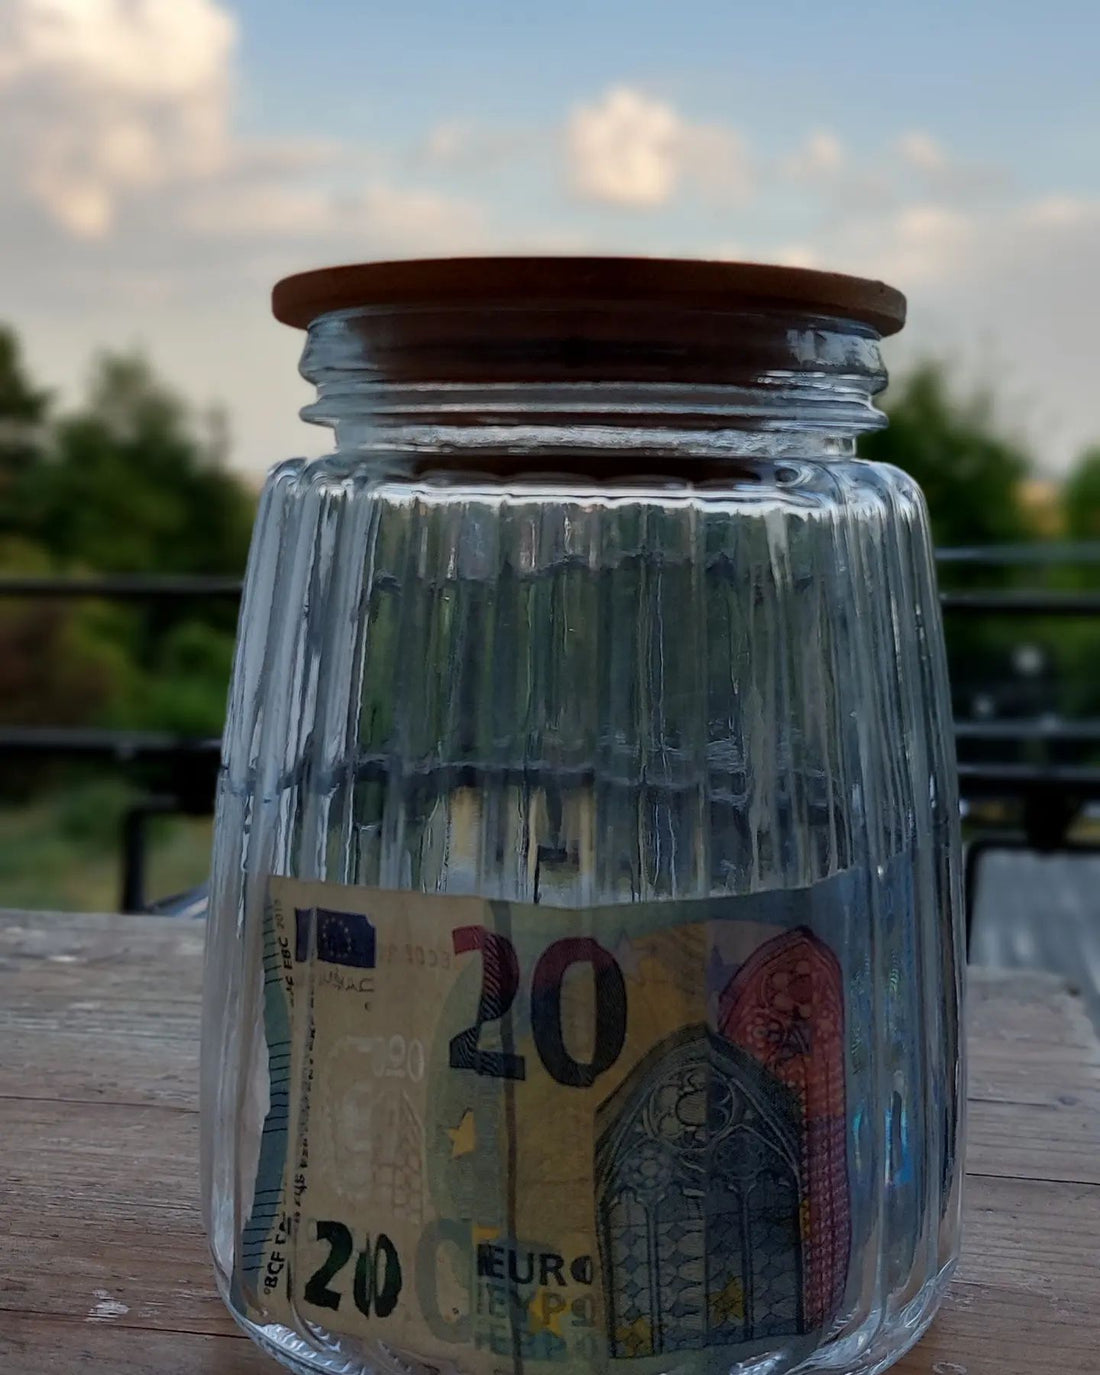 Die ersten zwanzig Euro sind im Spendenglas